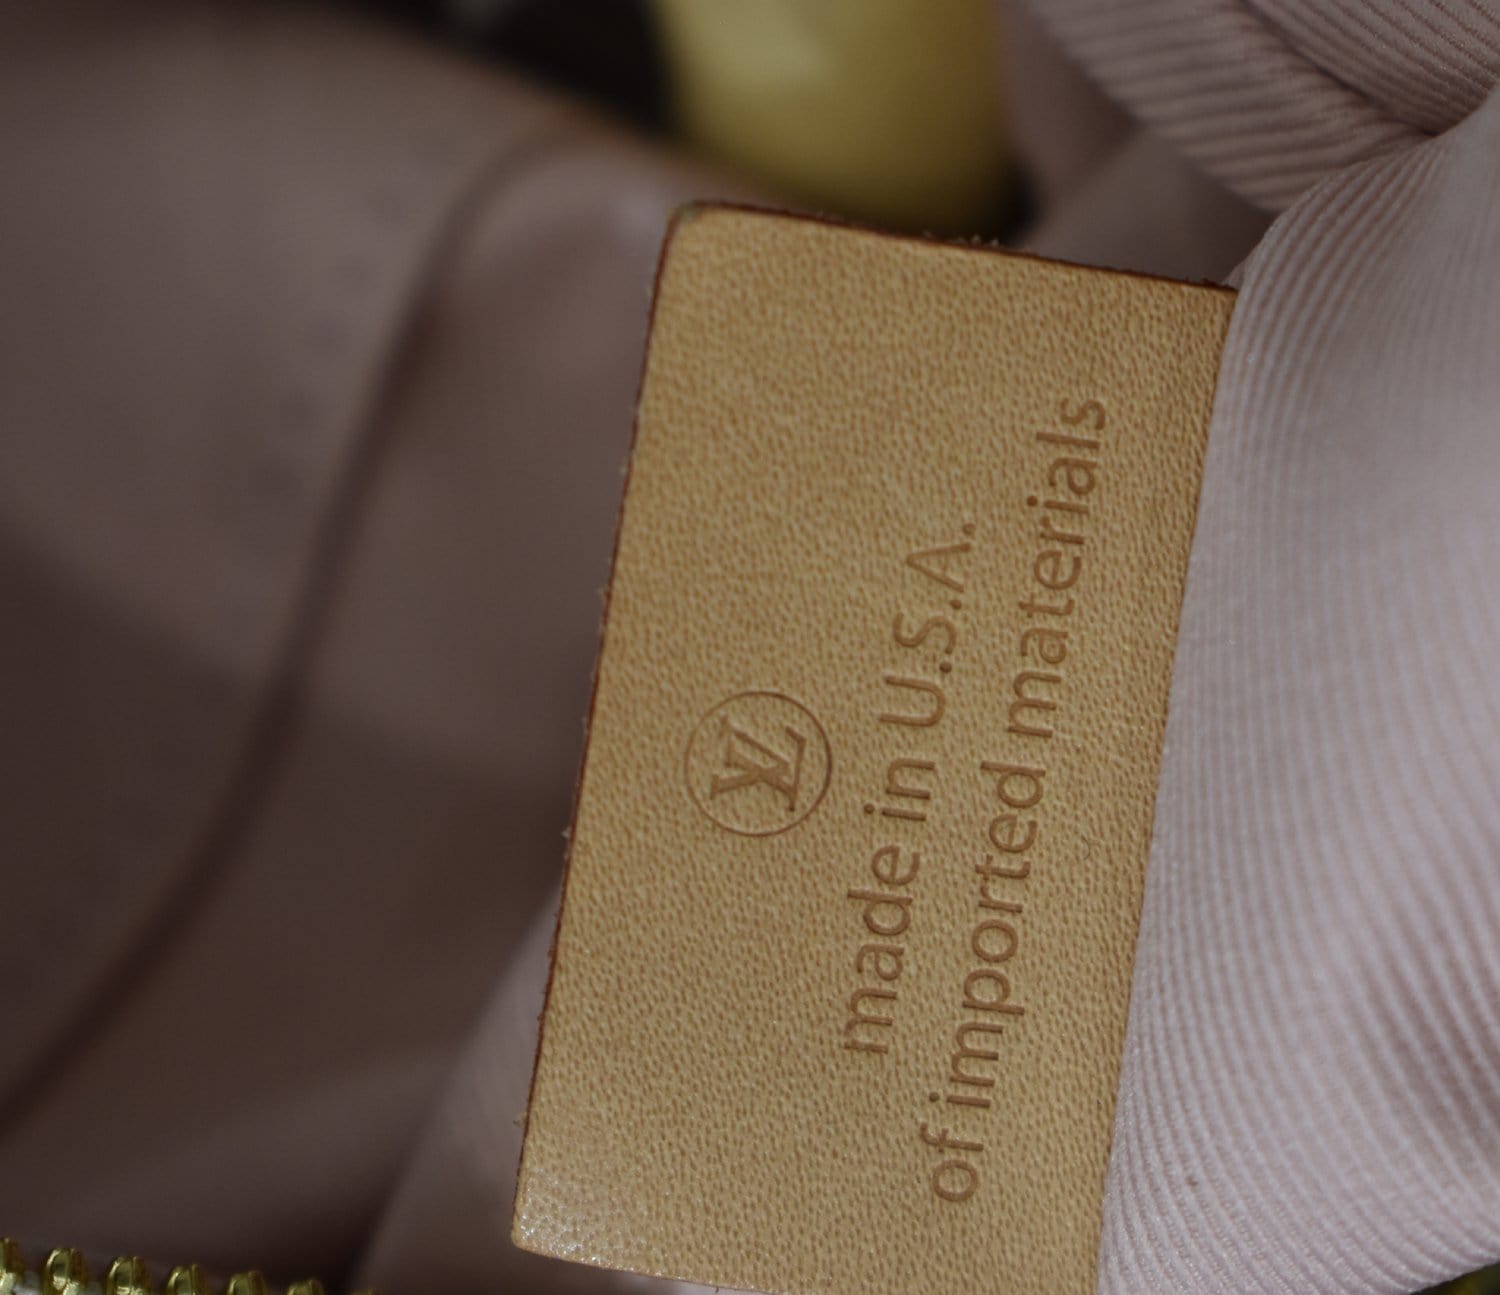 Authentic Louis Vuitton Damier Azur Lymington for Sale in Plano